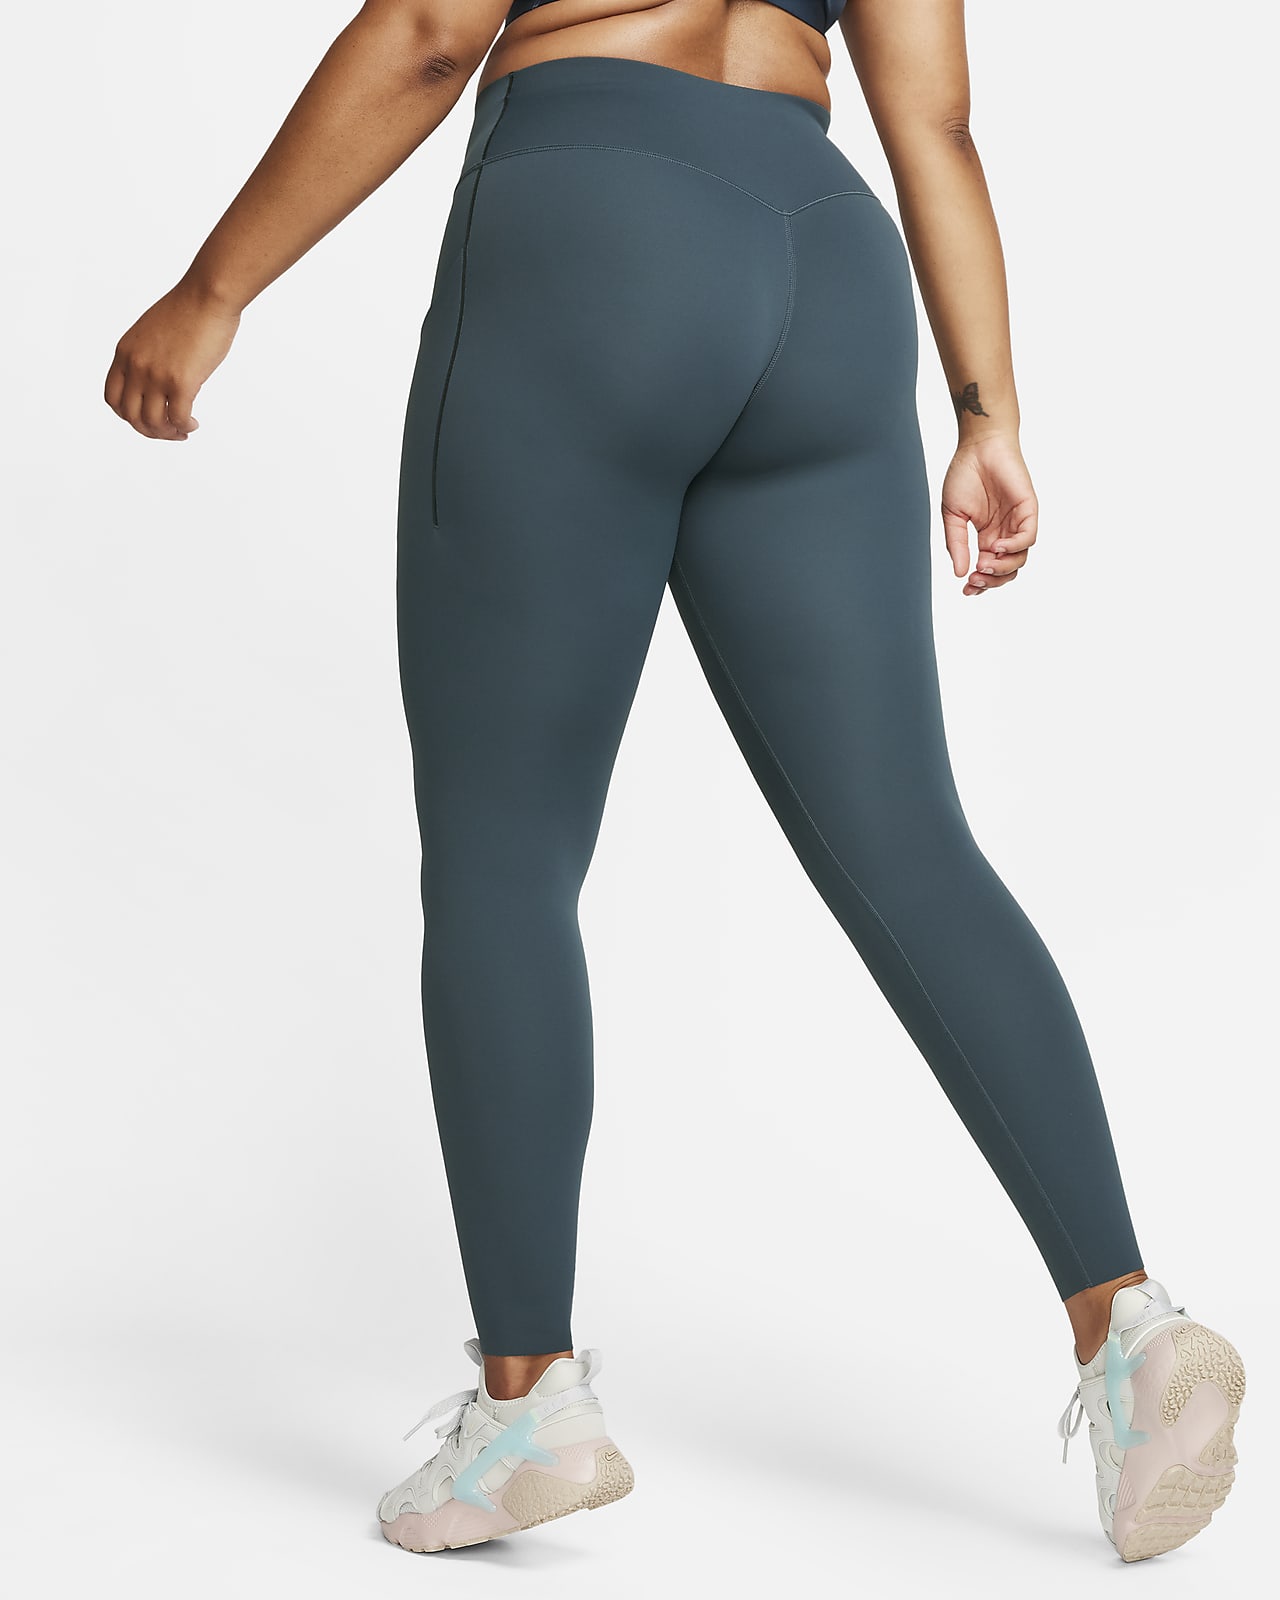 Leggings de yoga para mulher. Nike PT